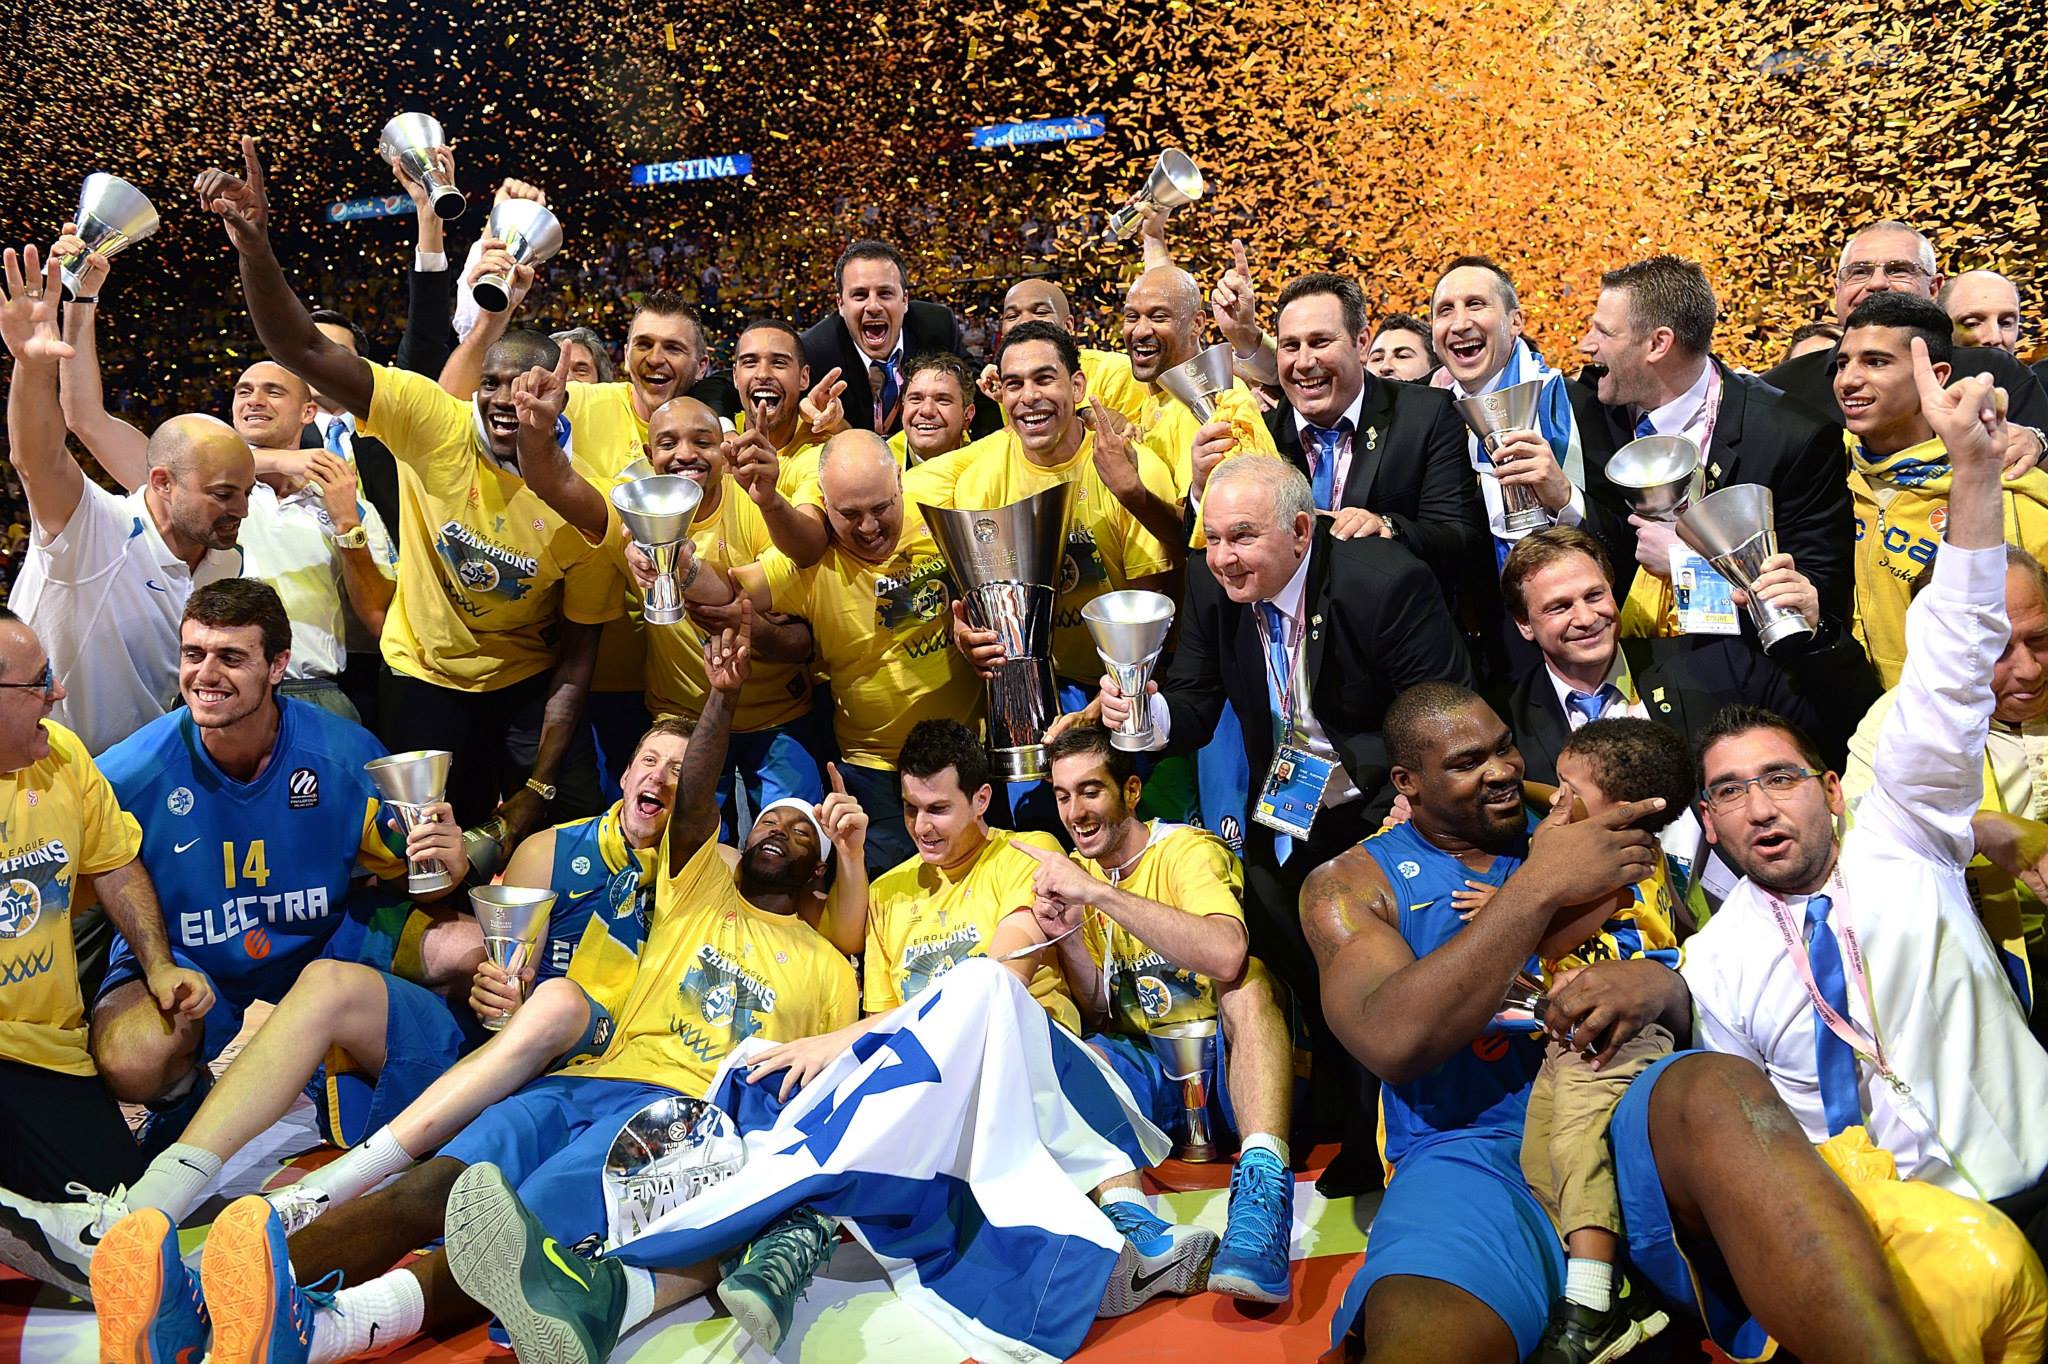 Campeão da Euroliga, Maccabi Tel Aviv será o adversário do Flamengo no Mundial (Divulgação/FIBA)